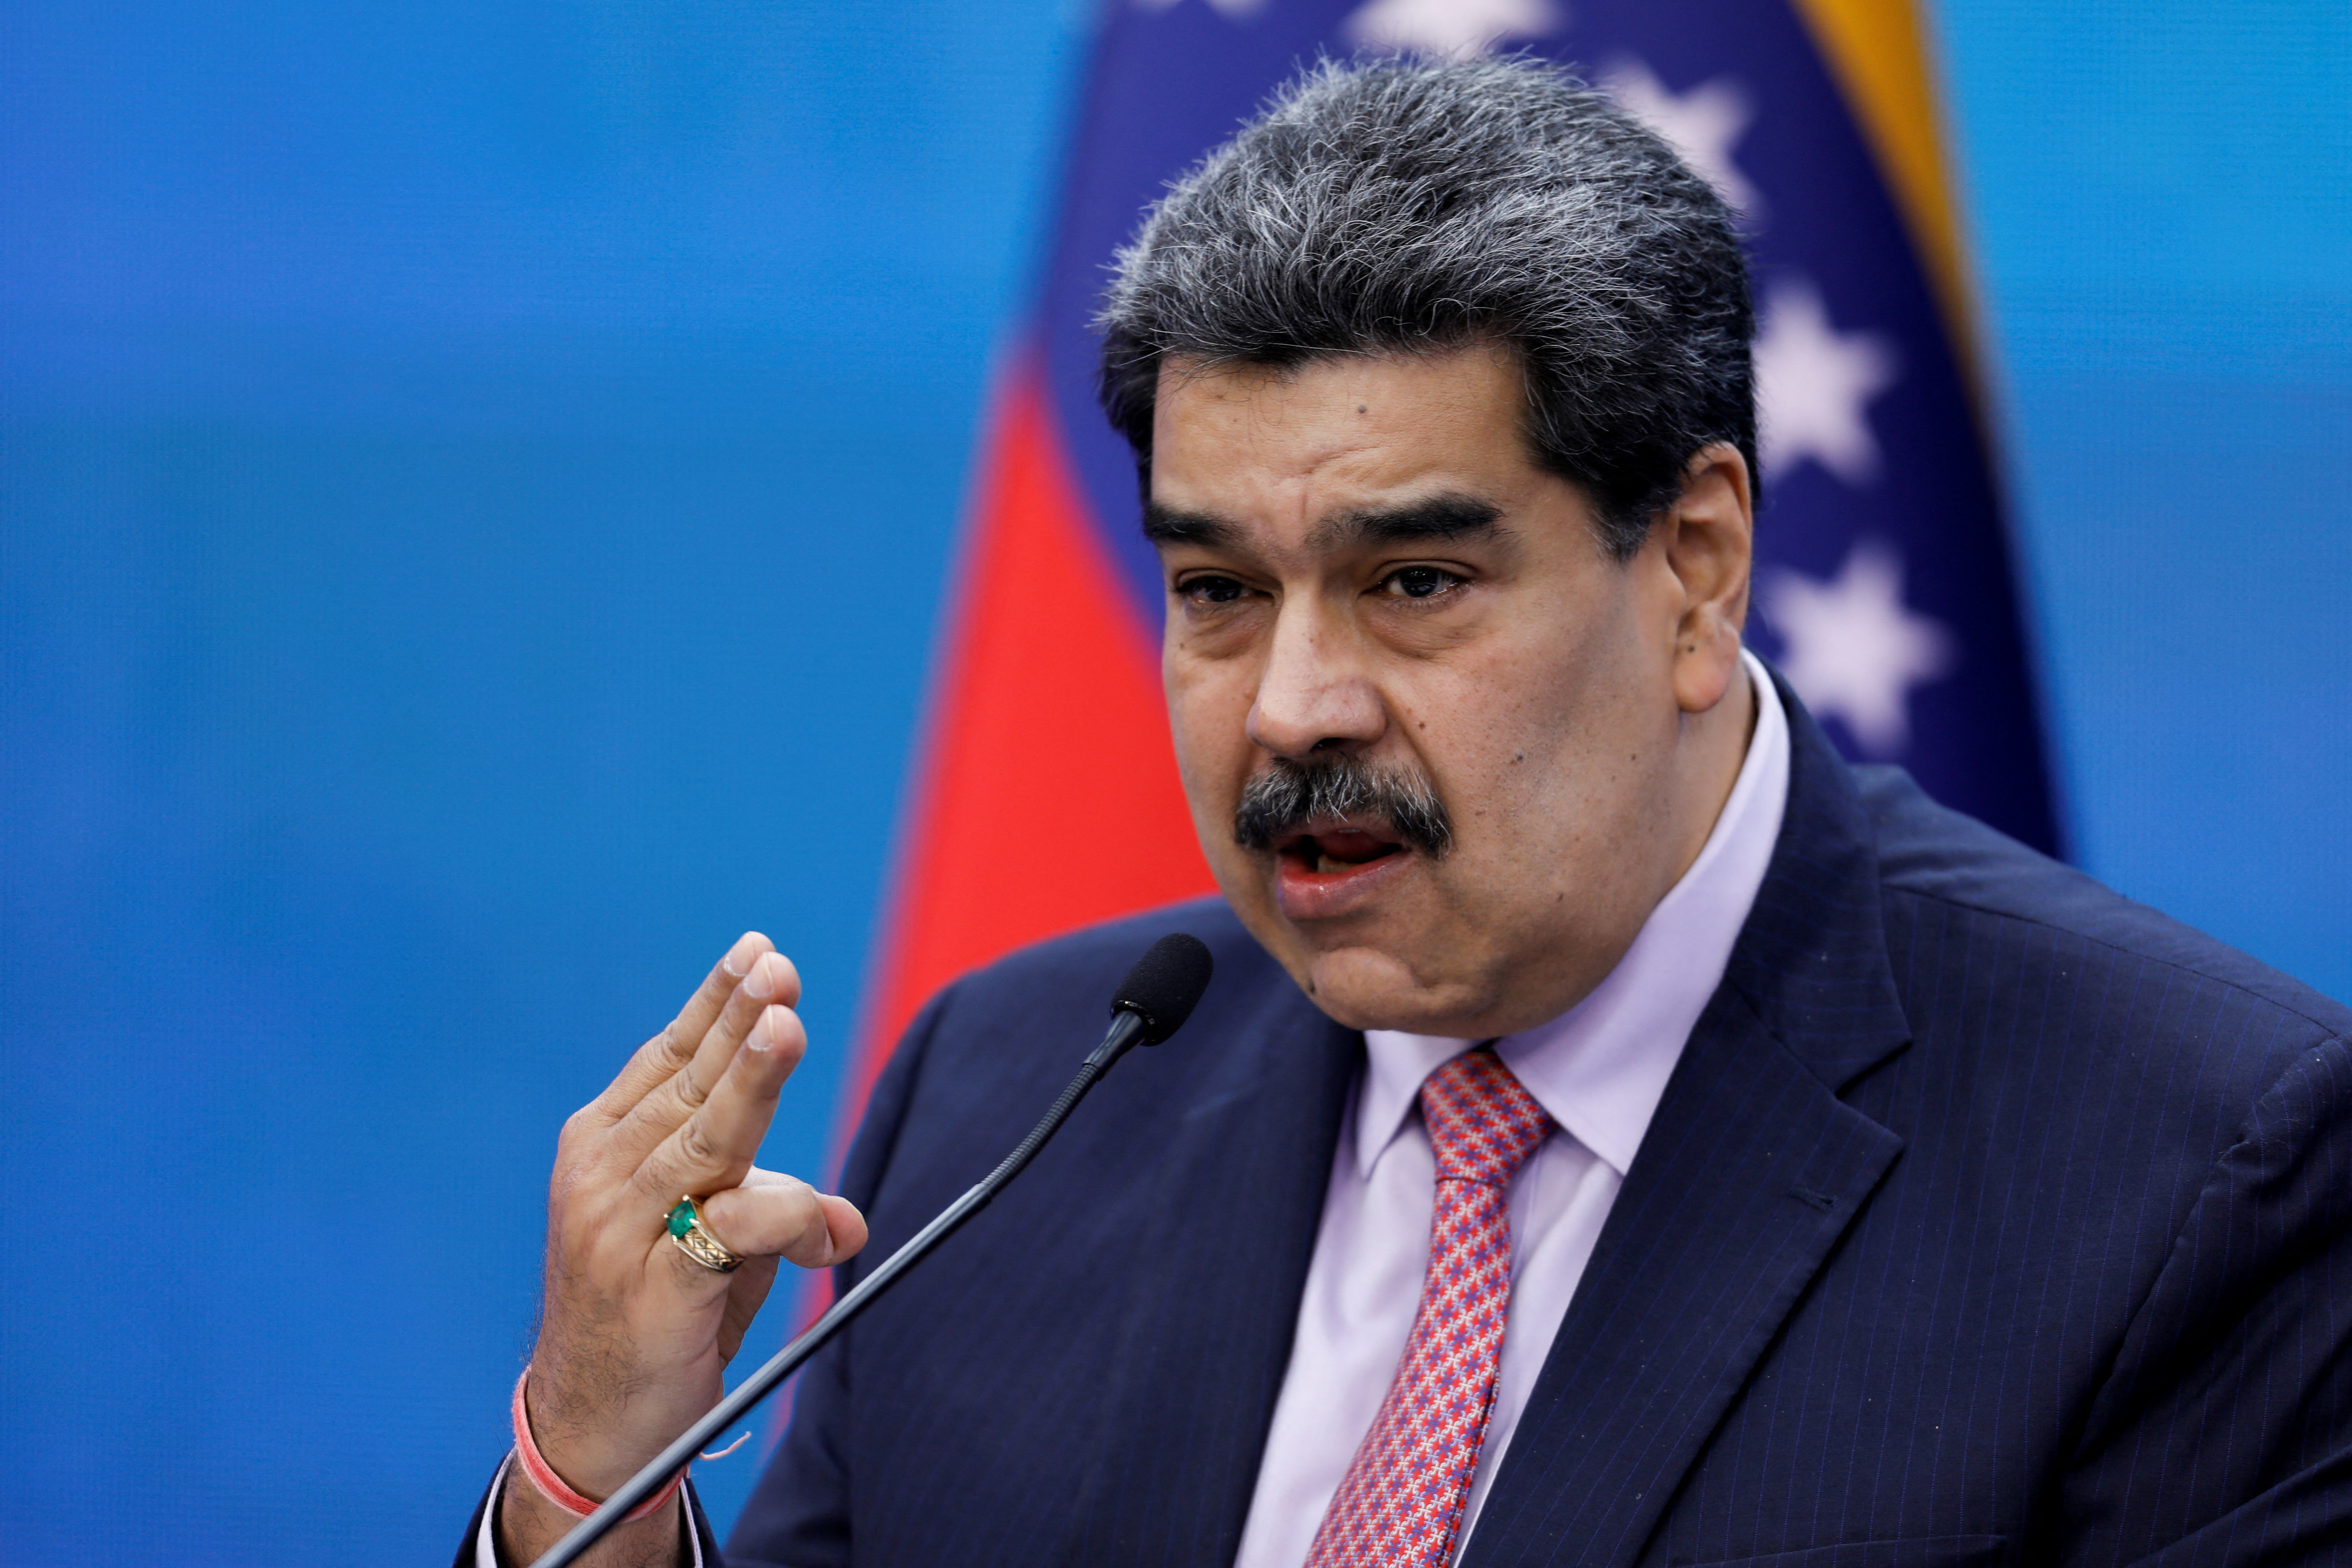 El régimen chavista difundió que un “falso positivo de COVID-19″ truncó el viaje de Maduro a la Cumbre Iberoamericana